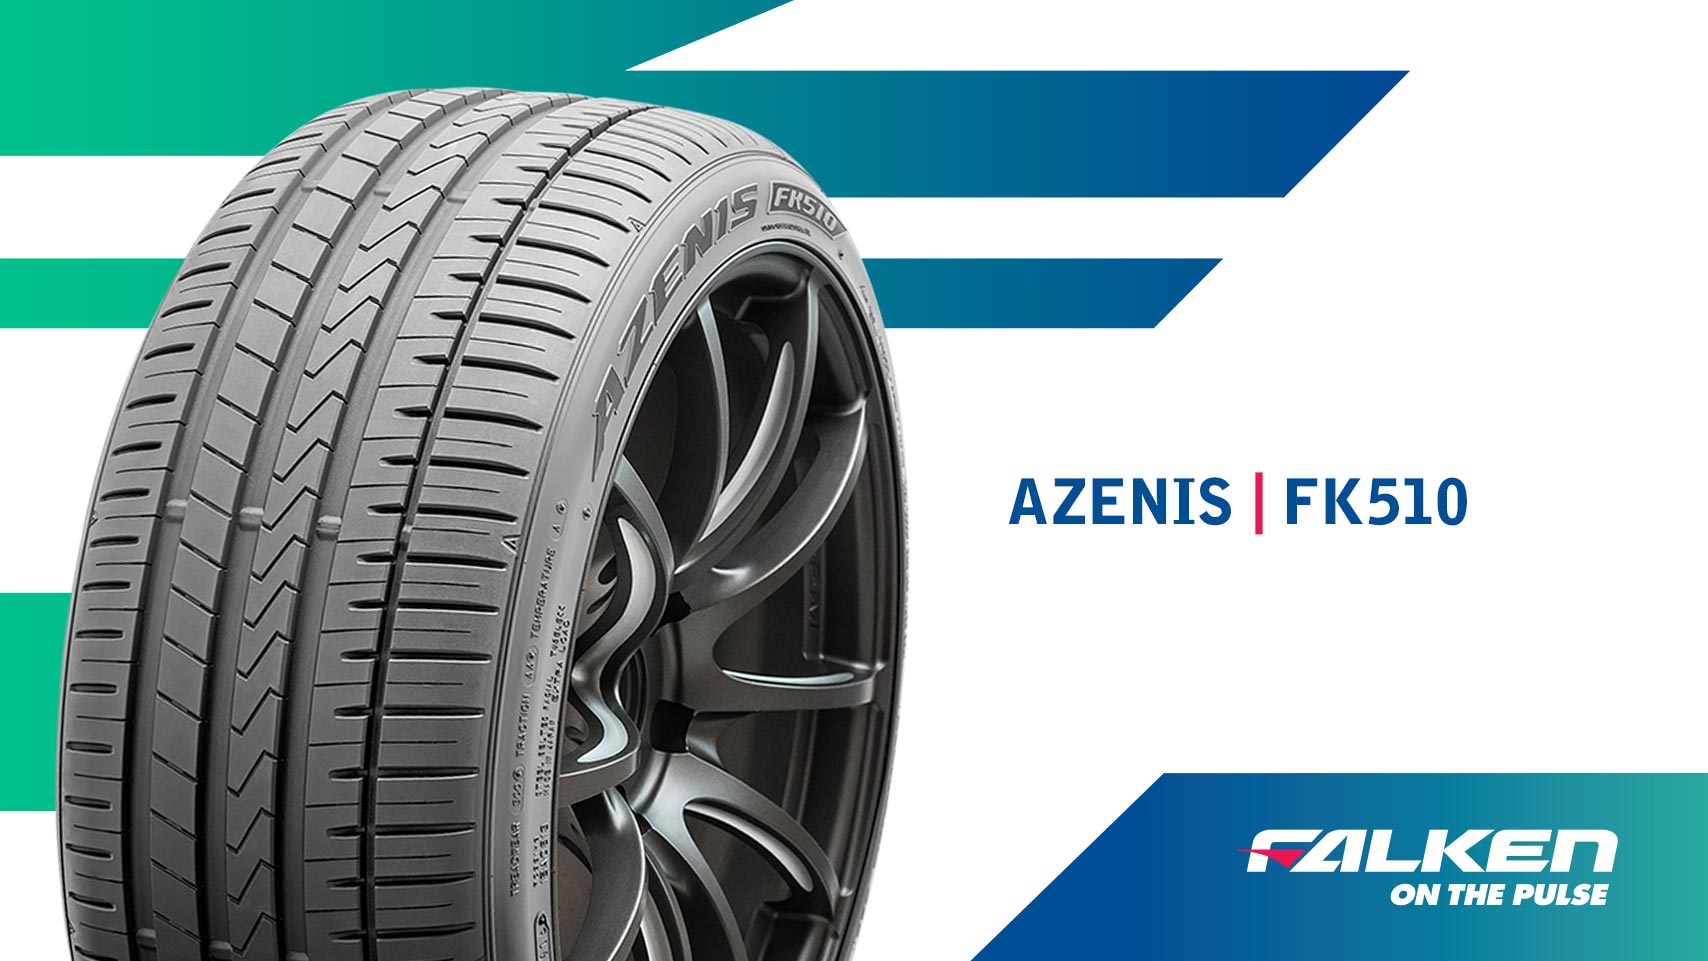 Falken's AZENIS FK510 tyres receive top marks in the 2022 ADAC Tyre Wear  Test - Falken Tyres Australia